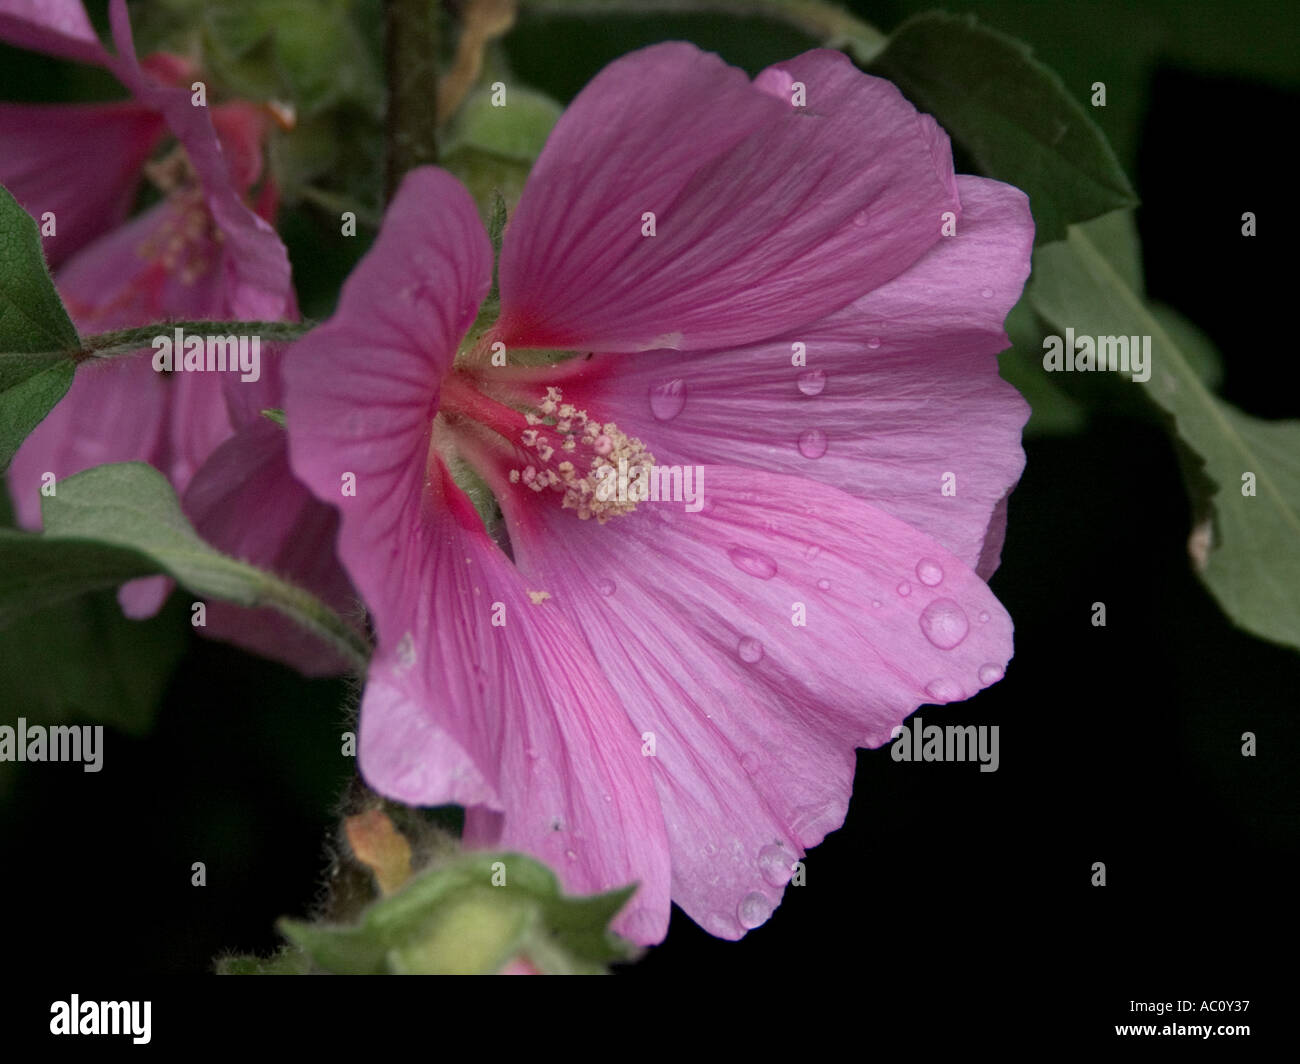 Close up of pink Lavatera Bush Mallow flower Stock Photo